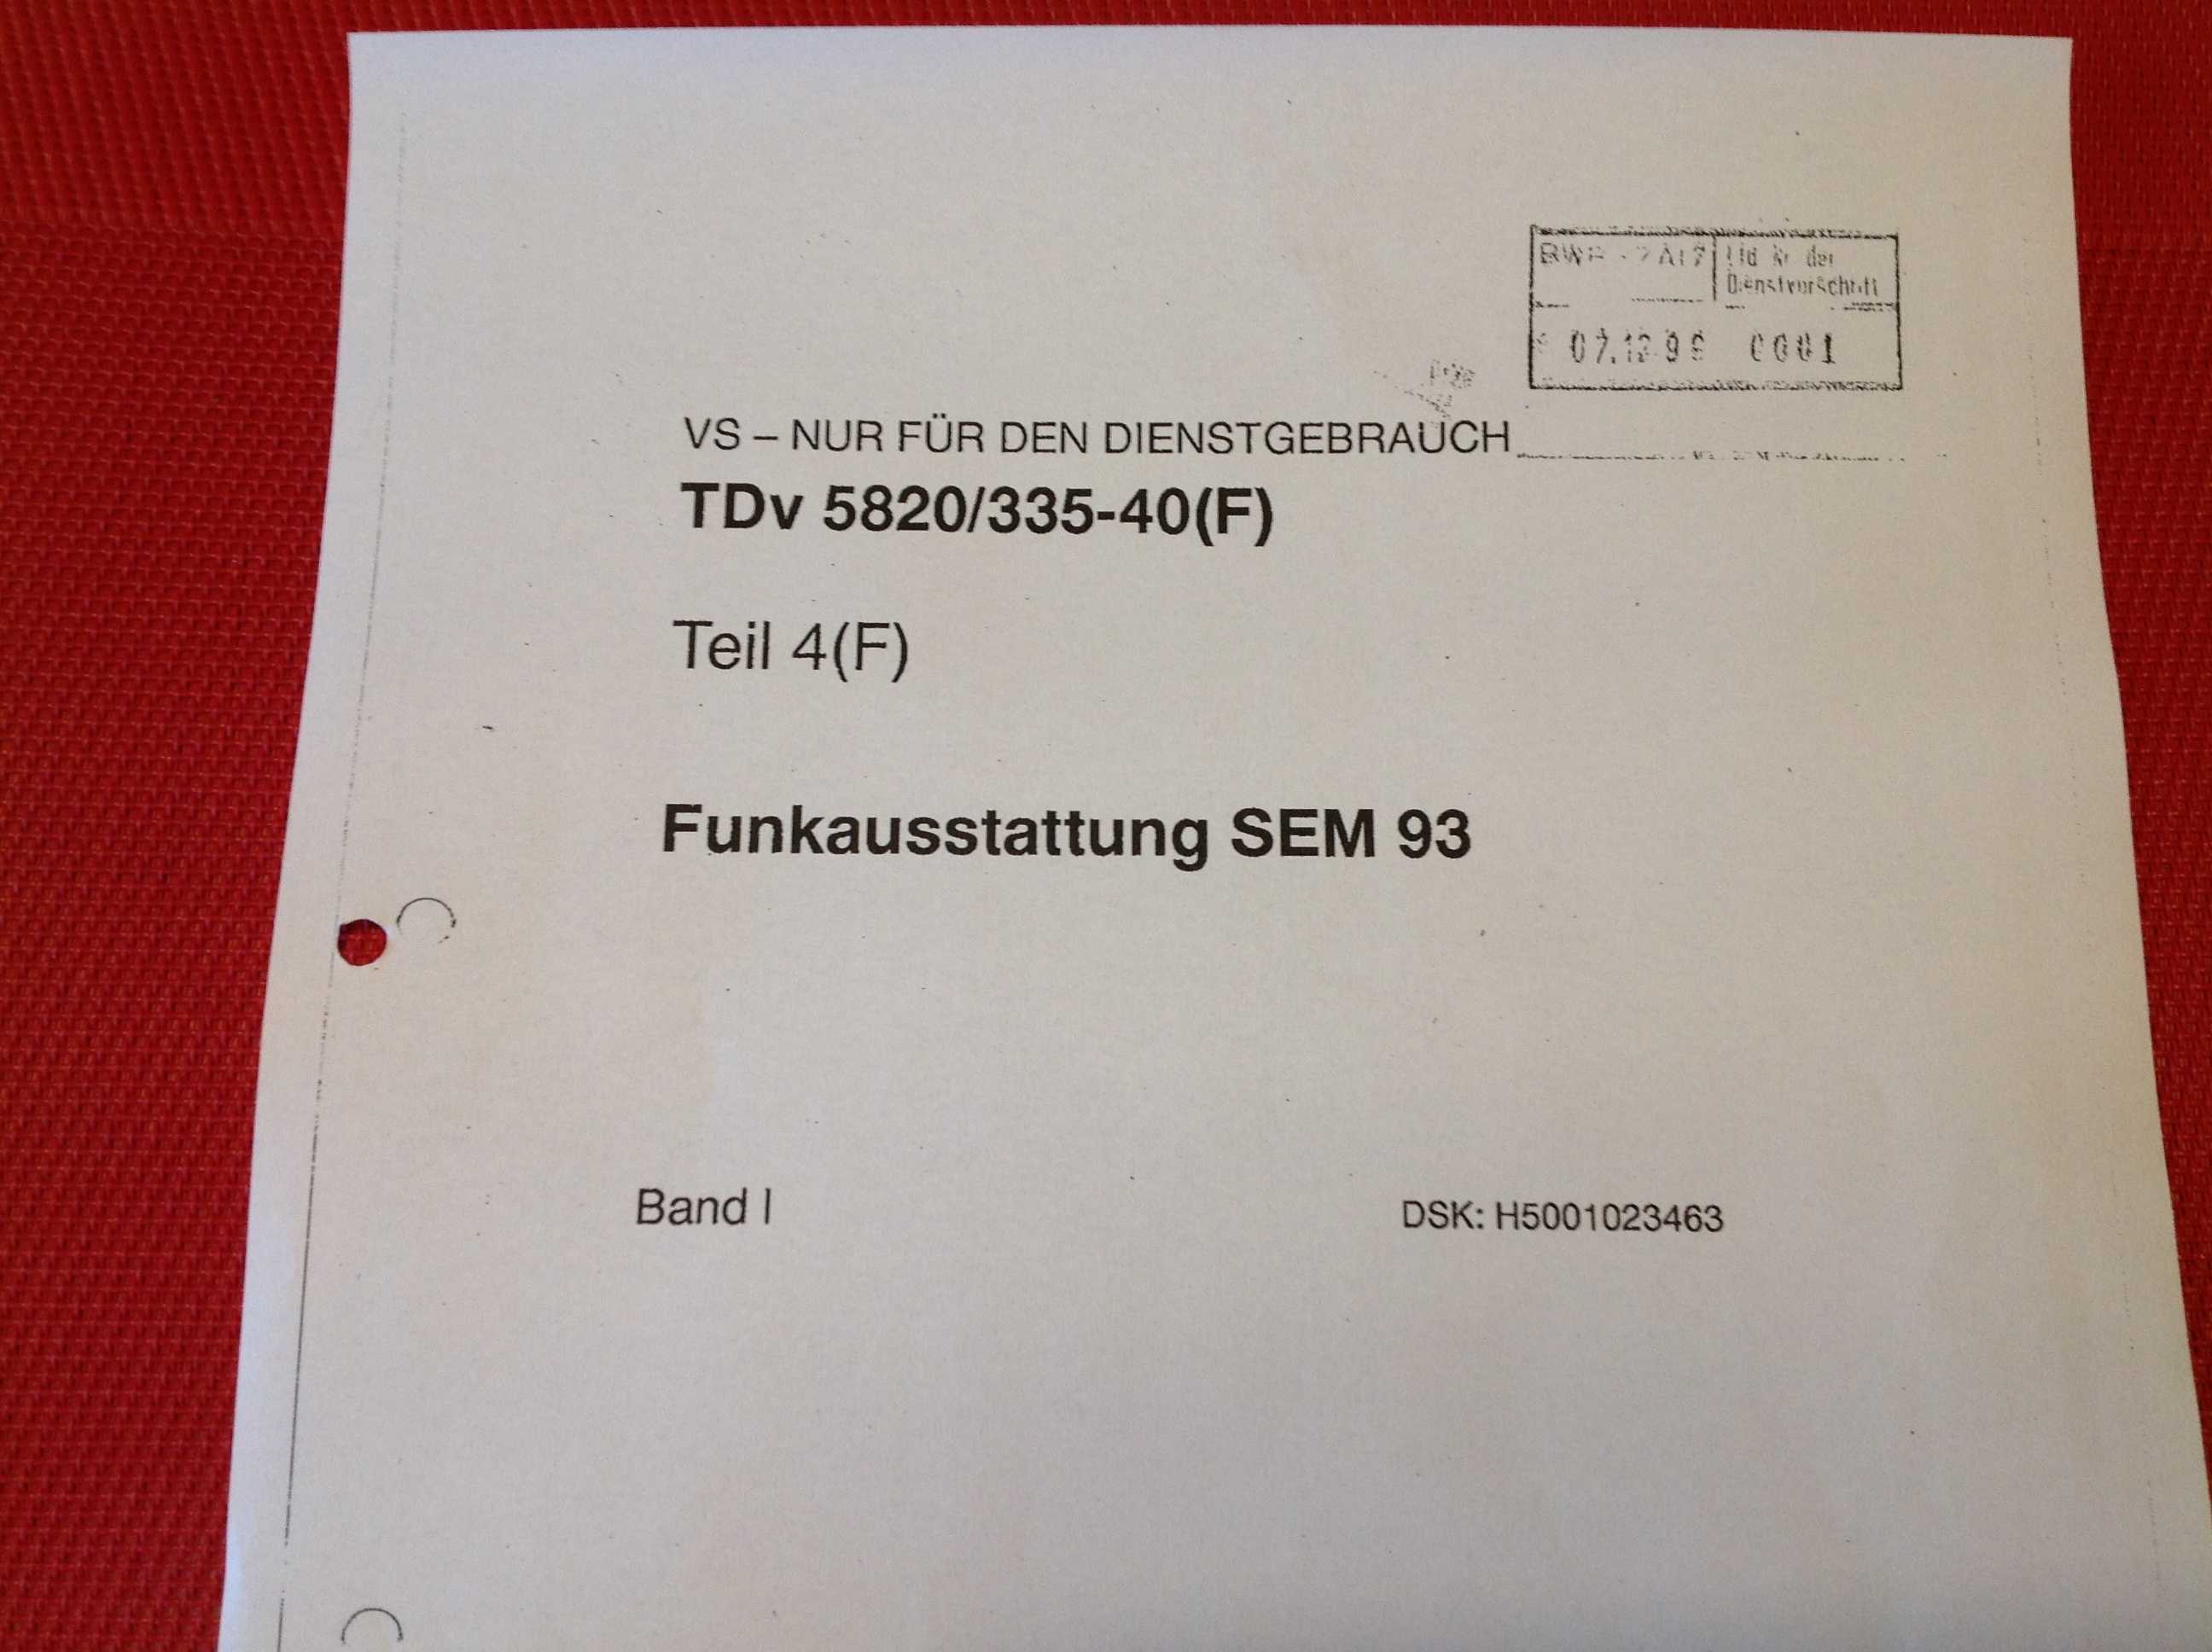 Funkausstattung SEM 93, TDv 5820/335-40(F)